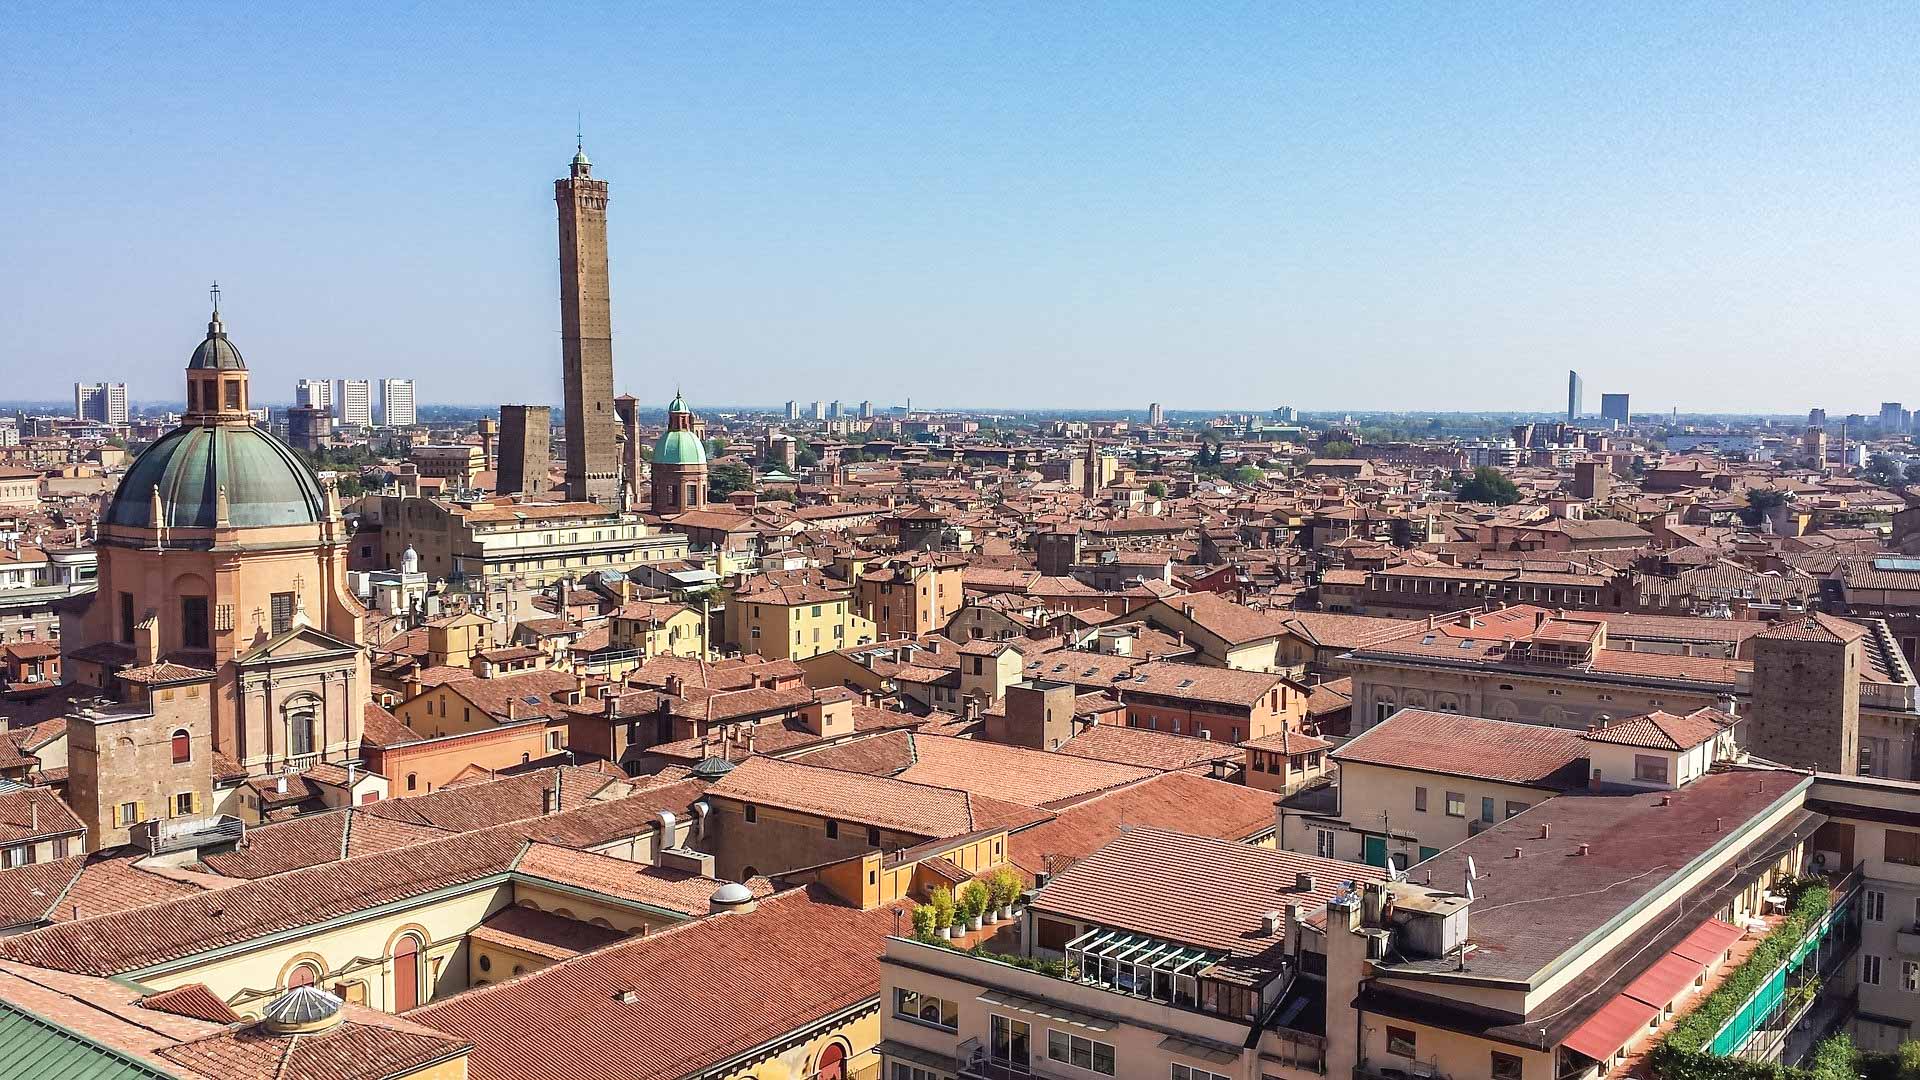 Una vista spettacolare dall'alto su tutta la città di Bologna. Tra i tanti edifici spiccano la cupola di una chiesa e soprattutto l'altissima torre degli asinelli. Sullo sfondo gli edifici moderni della città.